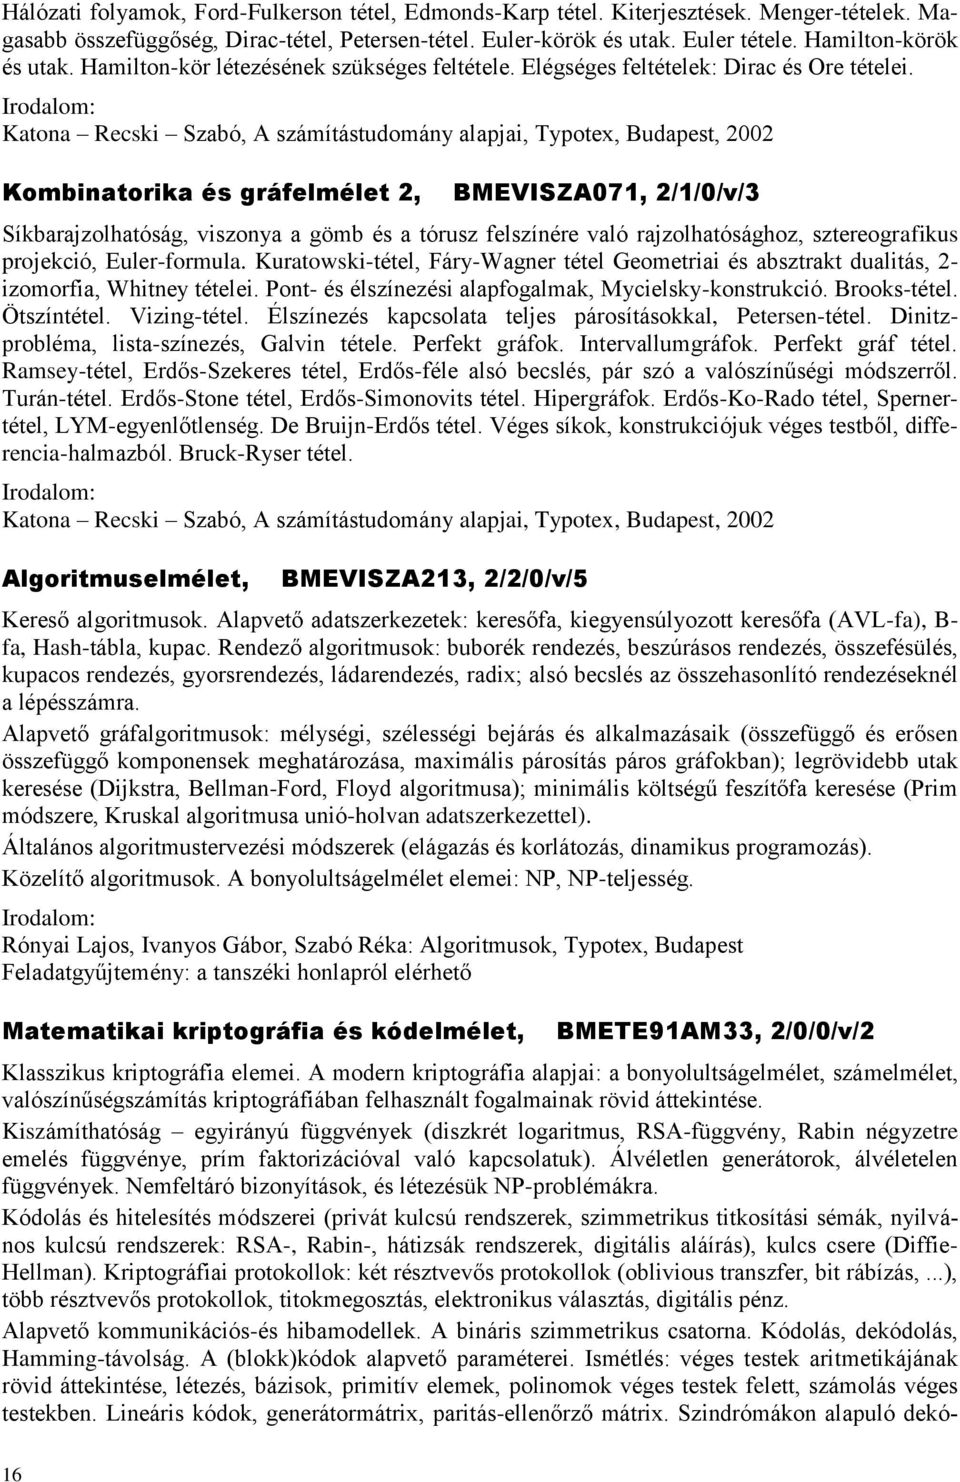 Katona Recski Szabó, A számítástudomány alapjai, Typotex, Budapest, 2002 Kombinatorika és gráfelmélet 2, BMEVISZA071, 2/1/0/v/3 Síkbarajzolhatóság, viszonya a gömb és a tórusz felszínére való